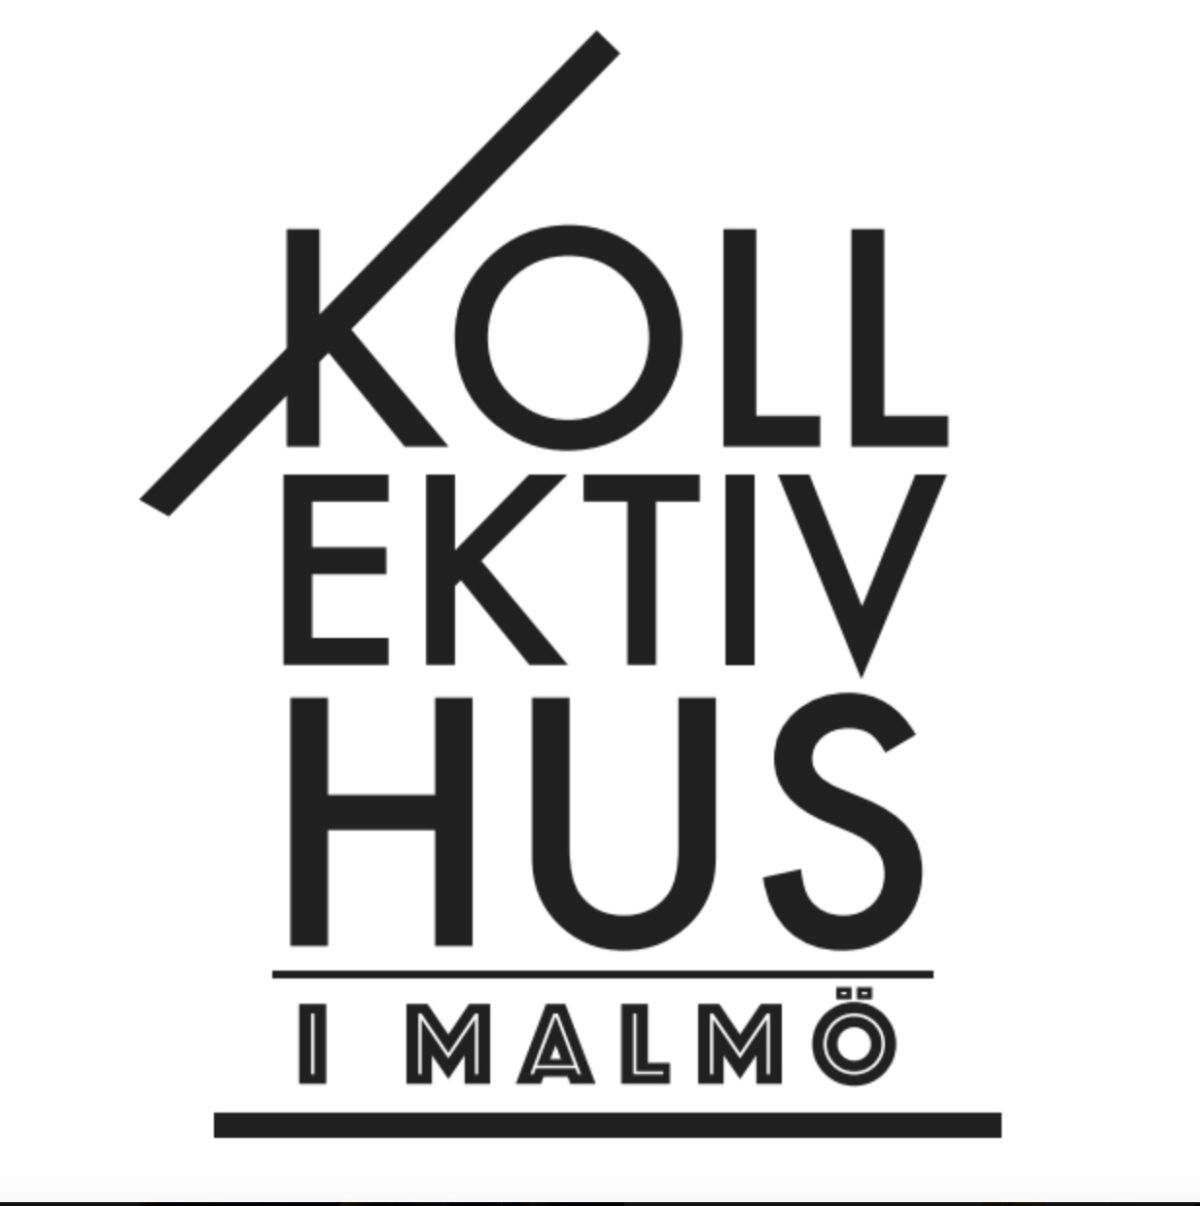 KiM, Kollektivhus i Malmö, startar tre grupper för att få igång fler kollektivhus